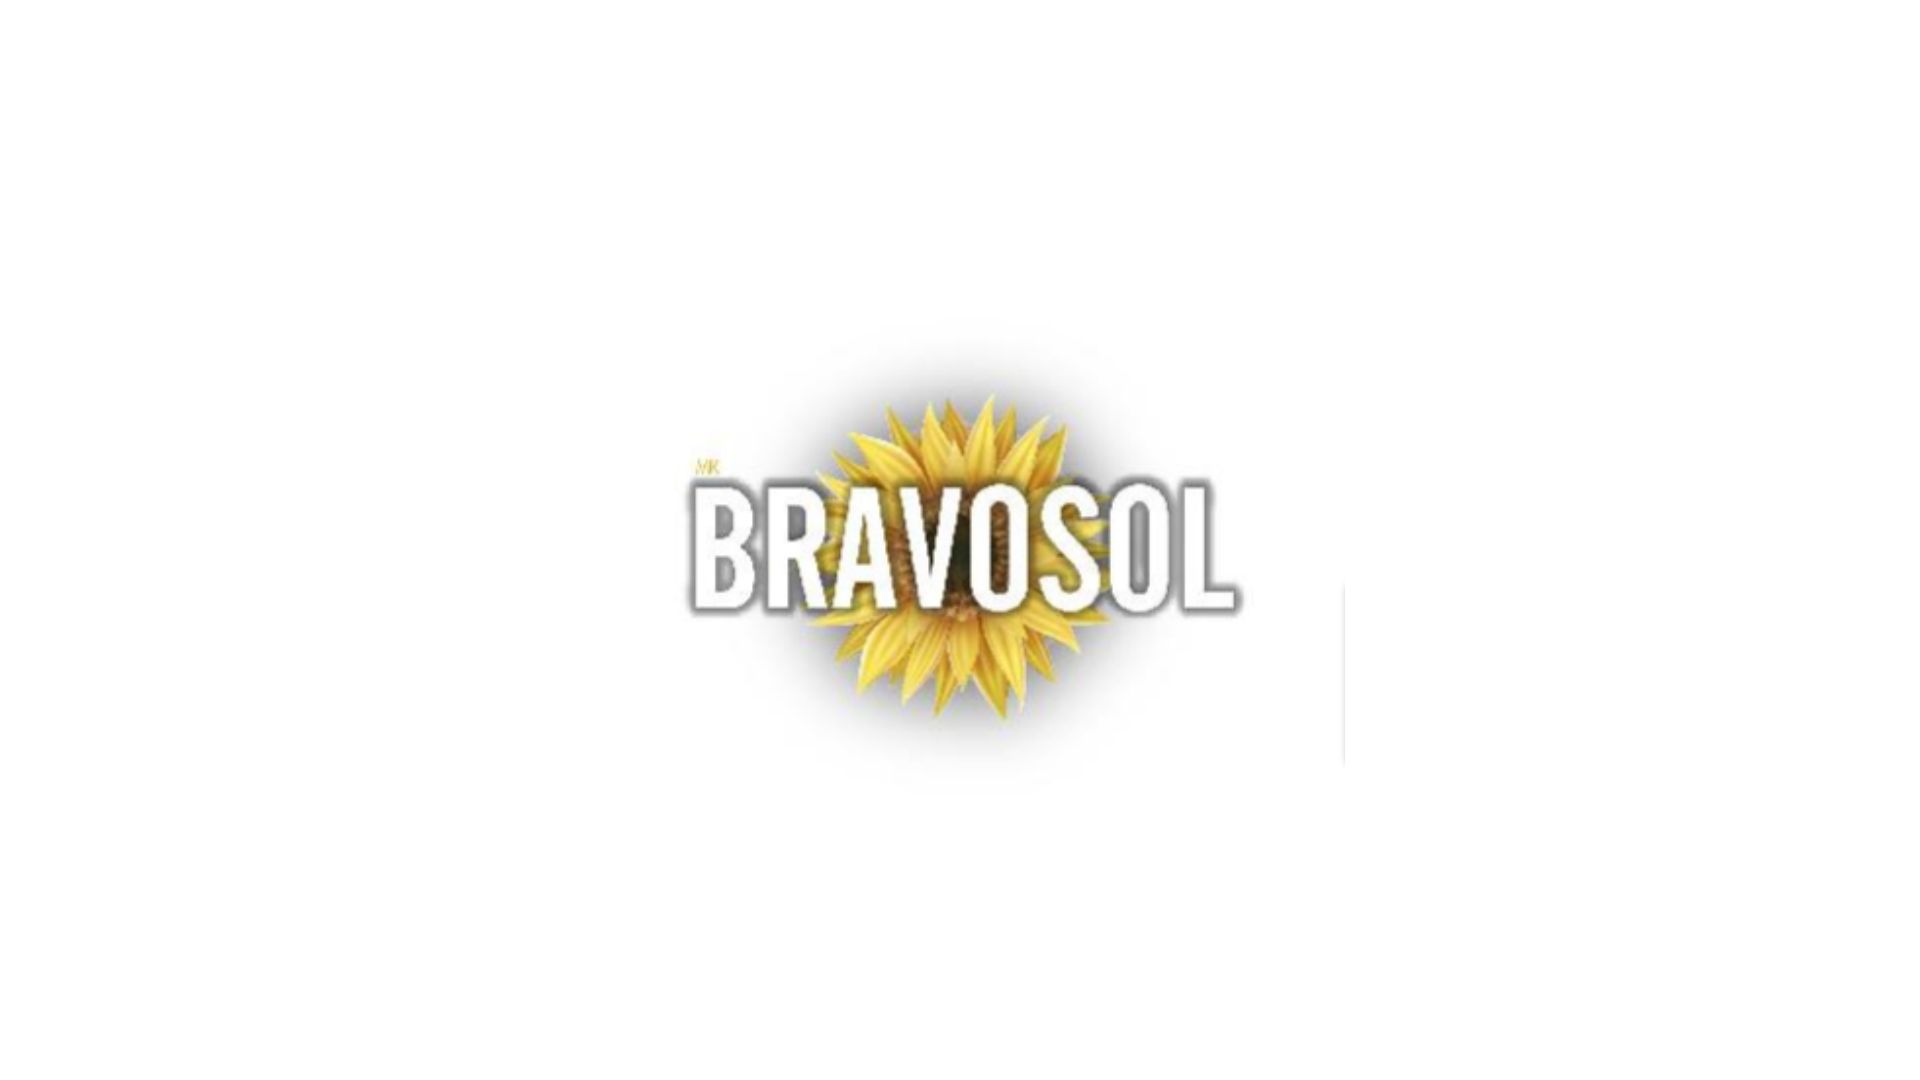 BRAVOSOL: Nueva marca de Aceite de Girasol